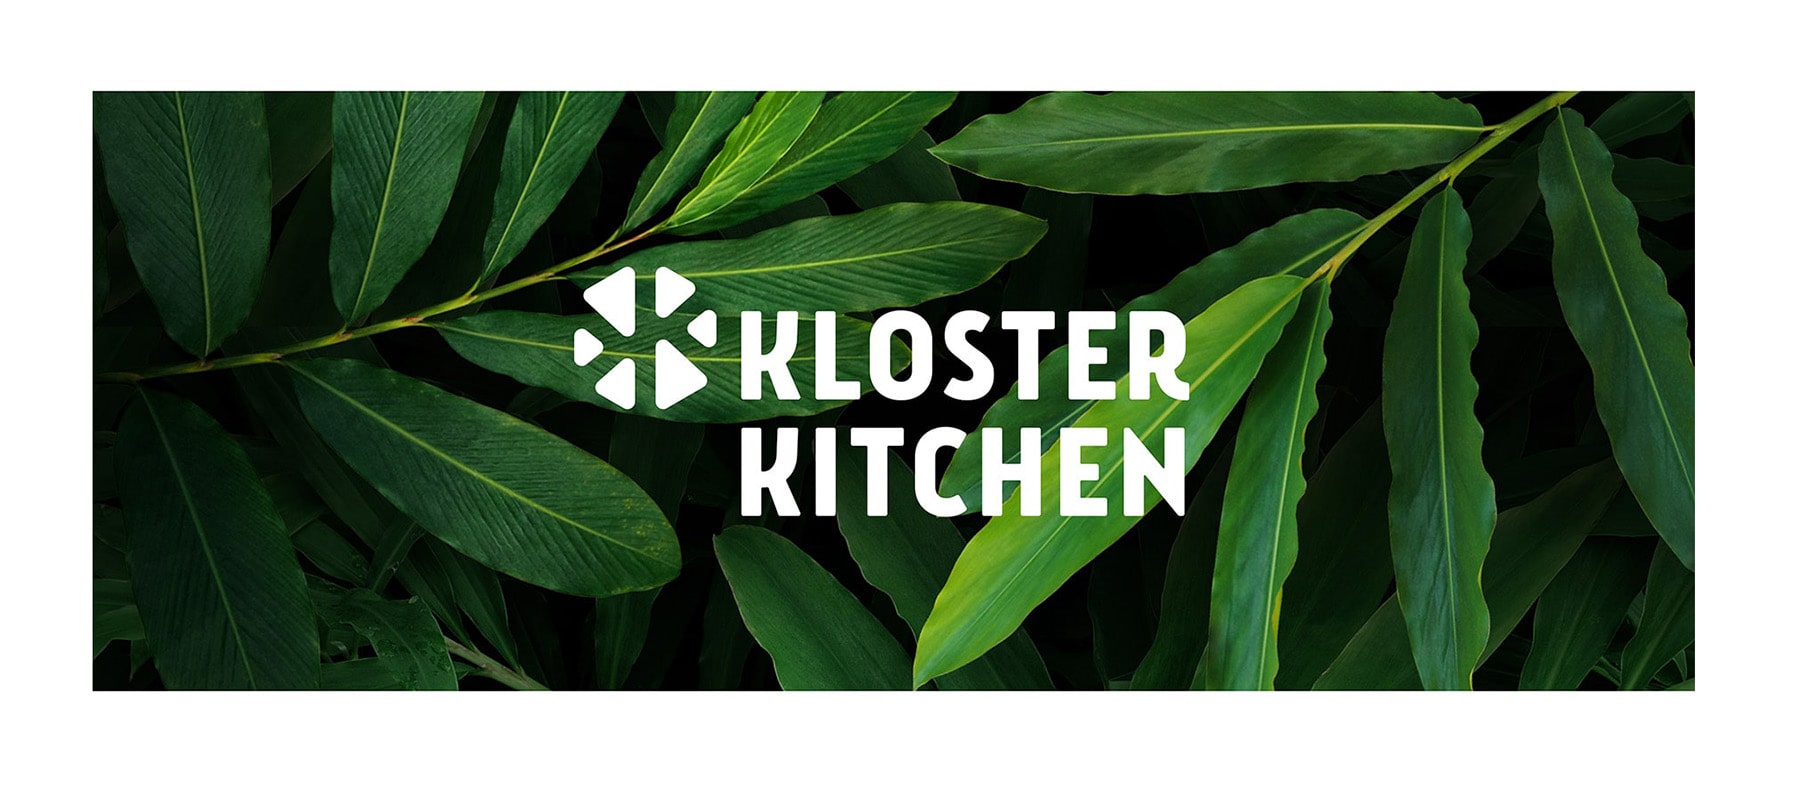 Bannière sur le thème de la durabilité : logo Kloster Kitchen sur fond de jungle